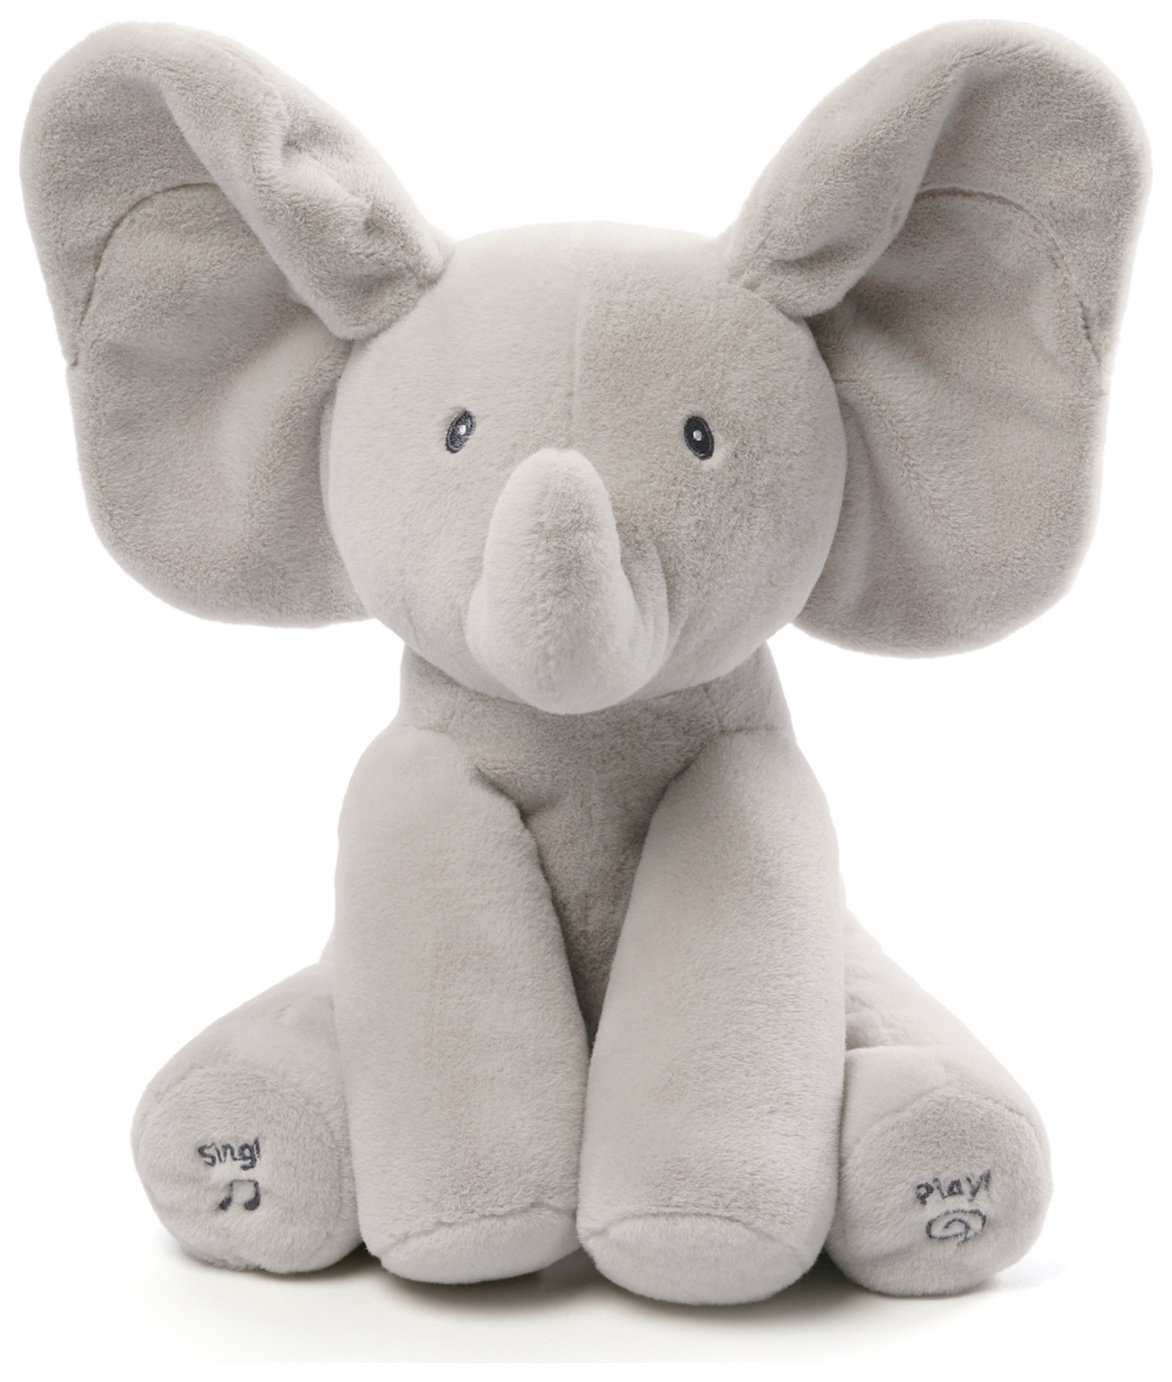 talking elephant baby toy